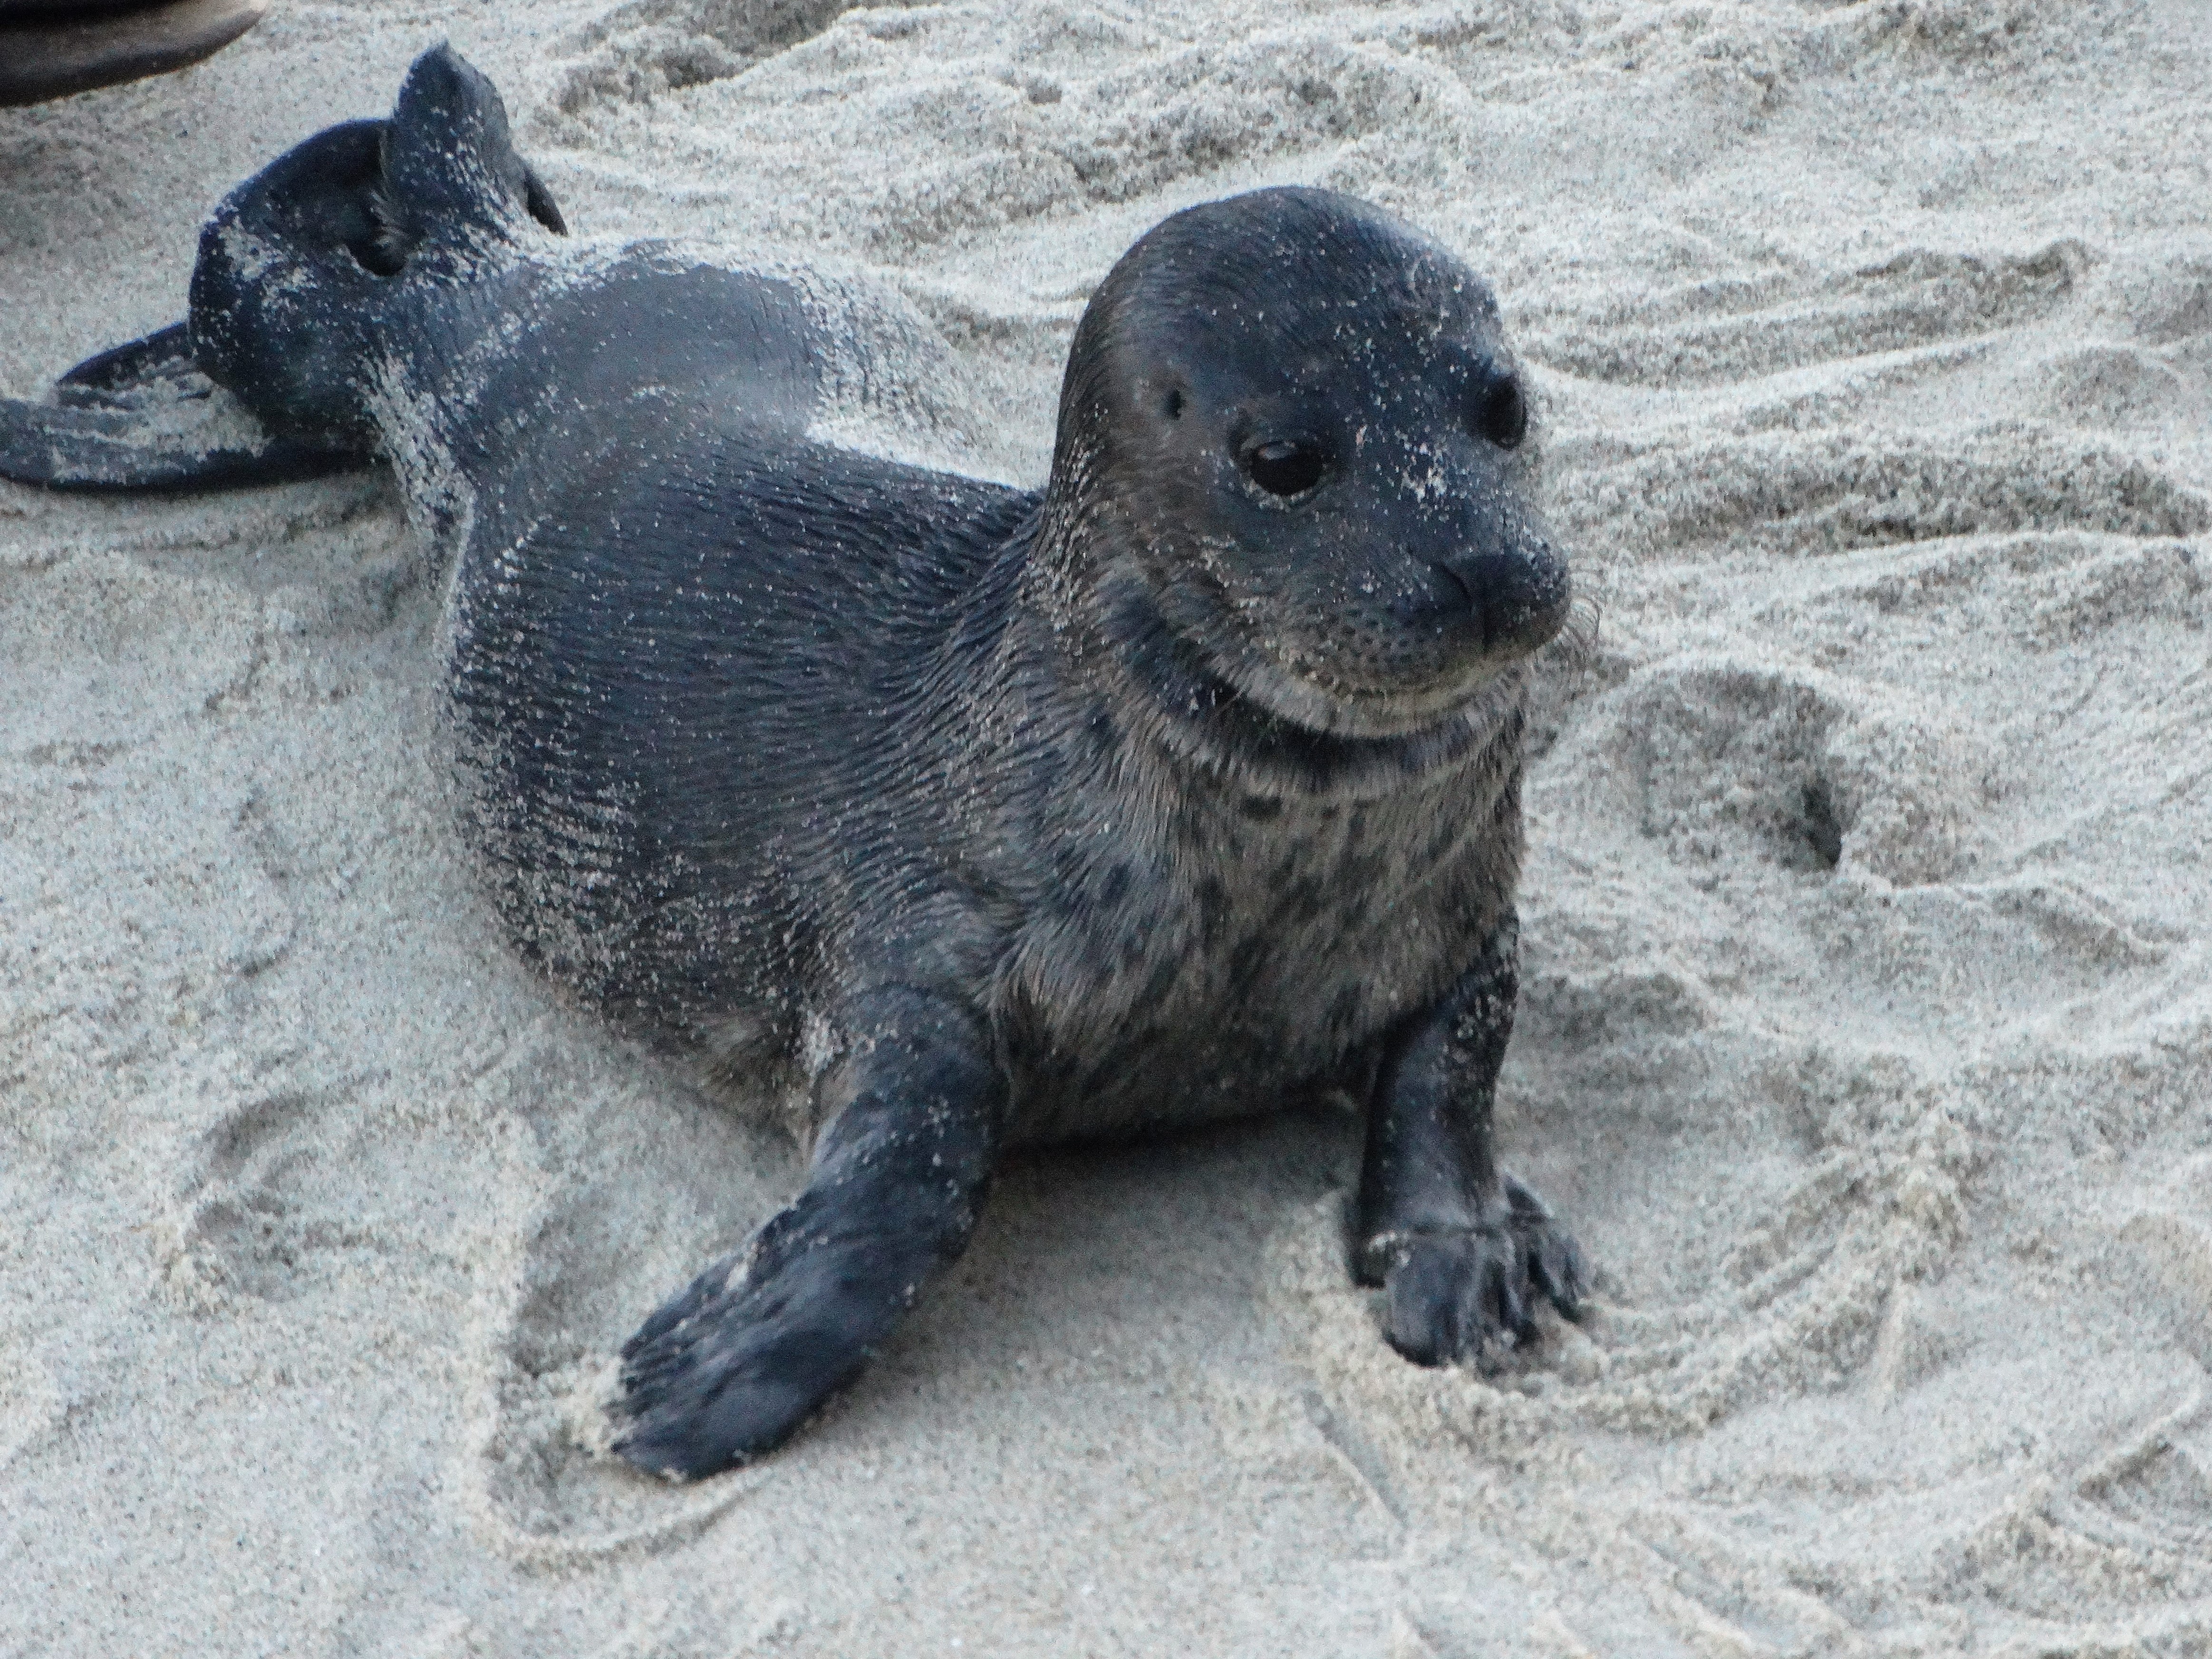 A baby seal lying on a sandy beach